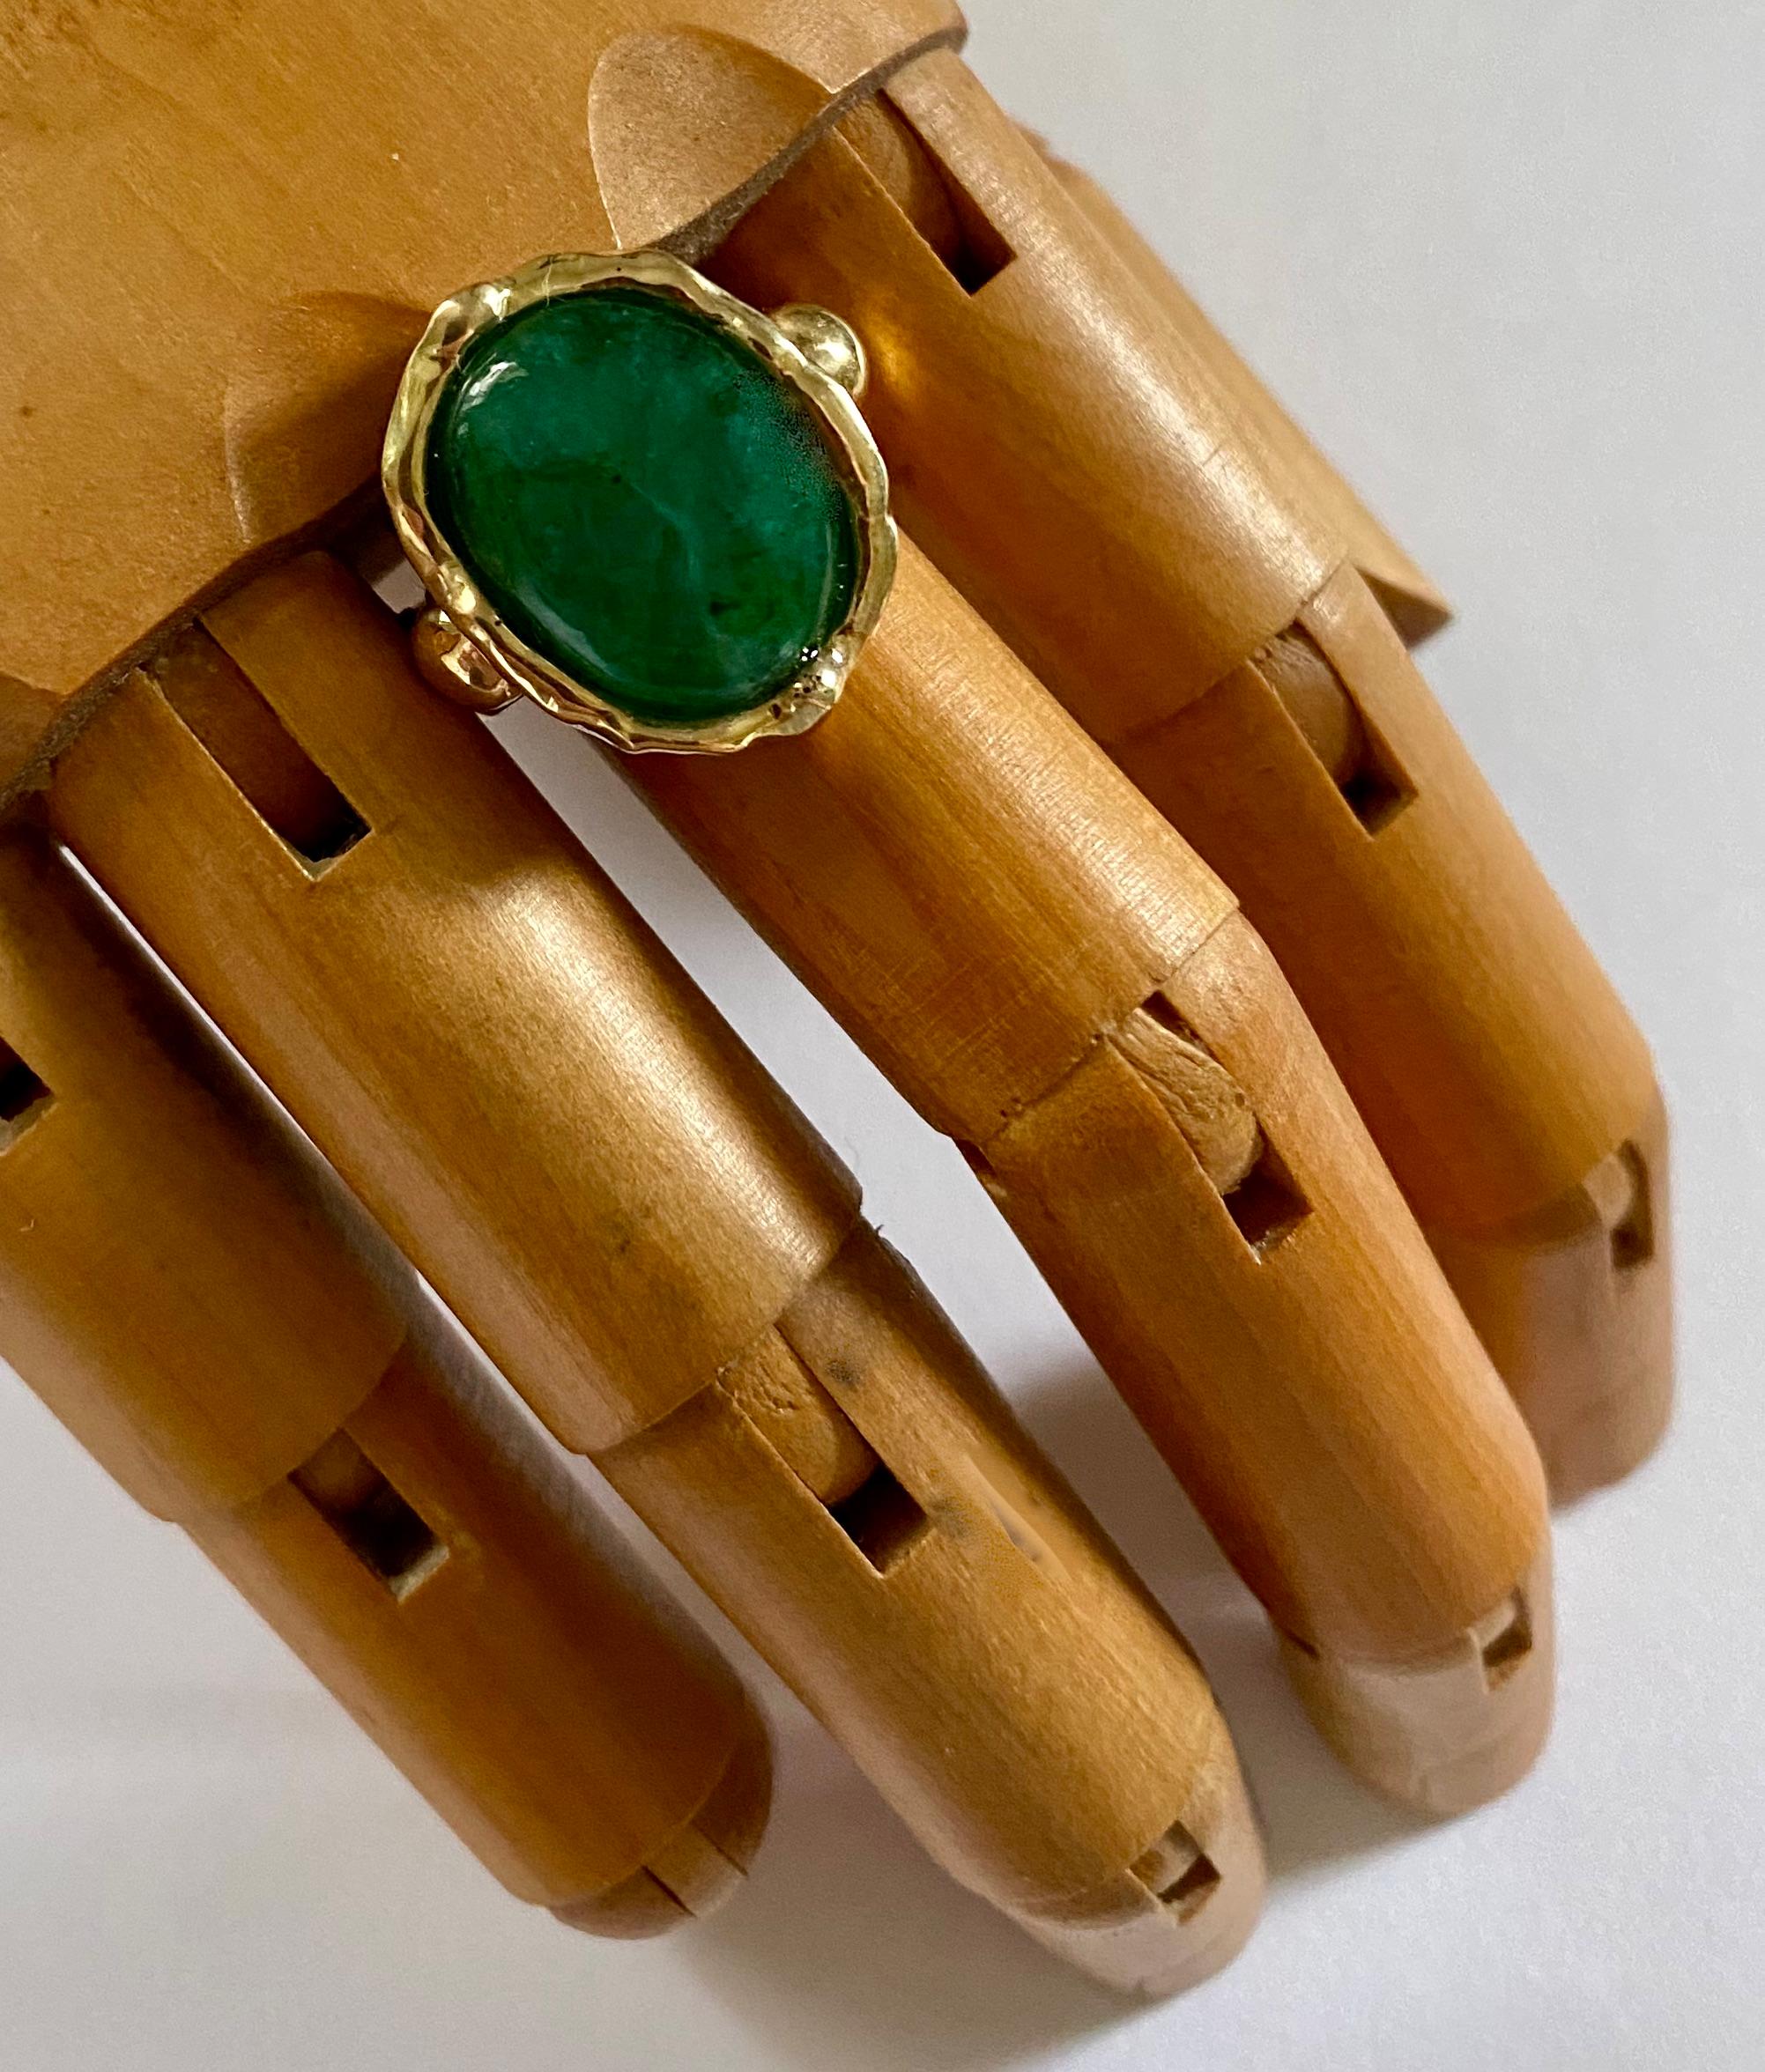 Ein sambischer Smaragd ziert diesen Ring im archaischen Stil.  Der Smaragd ist im Cabochon-Schliff.  Er hat eine satte grüne Farbe, ist halbtransparent und gut geschliffen und poliert.  Er ist in einem Ring aus 18 Karat Gelbgold gefasst.  Der Stil